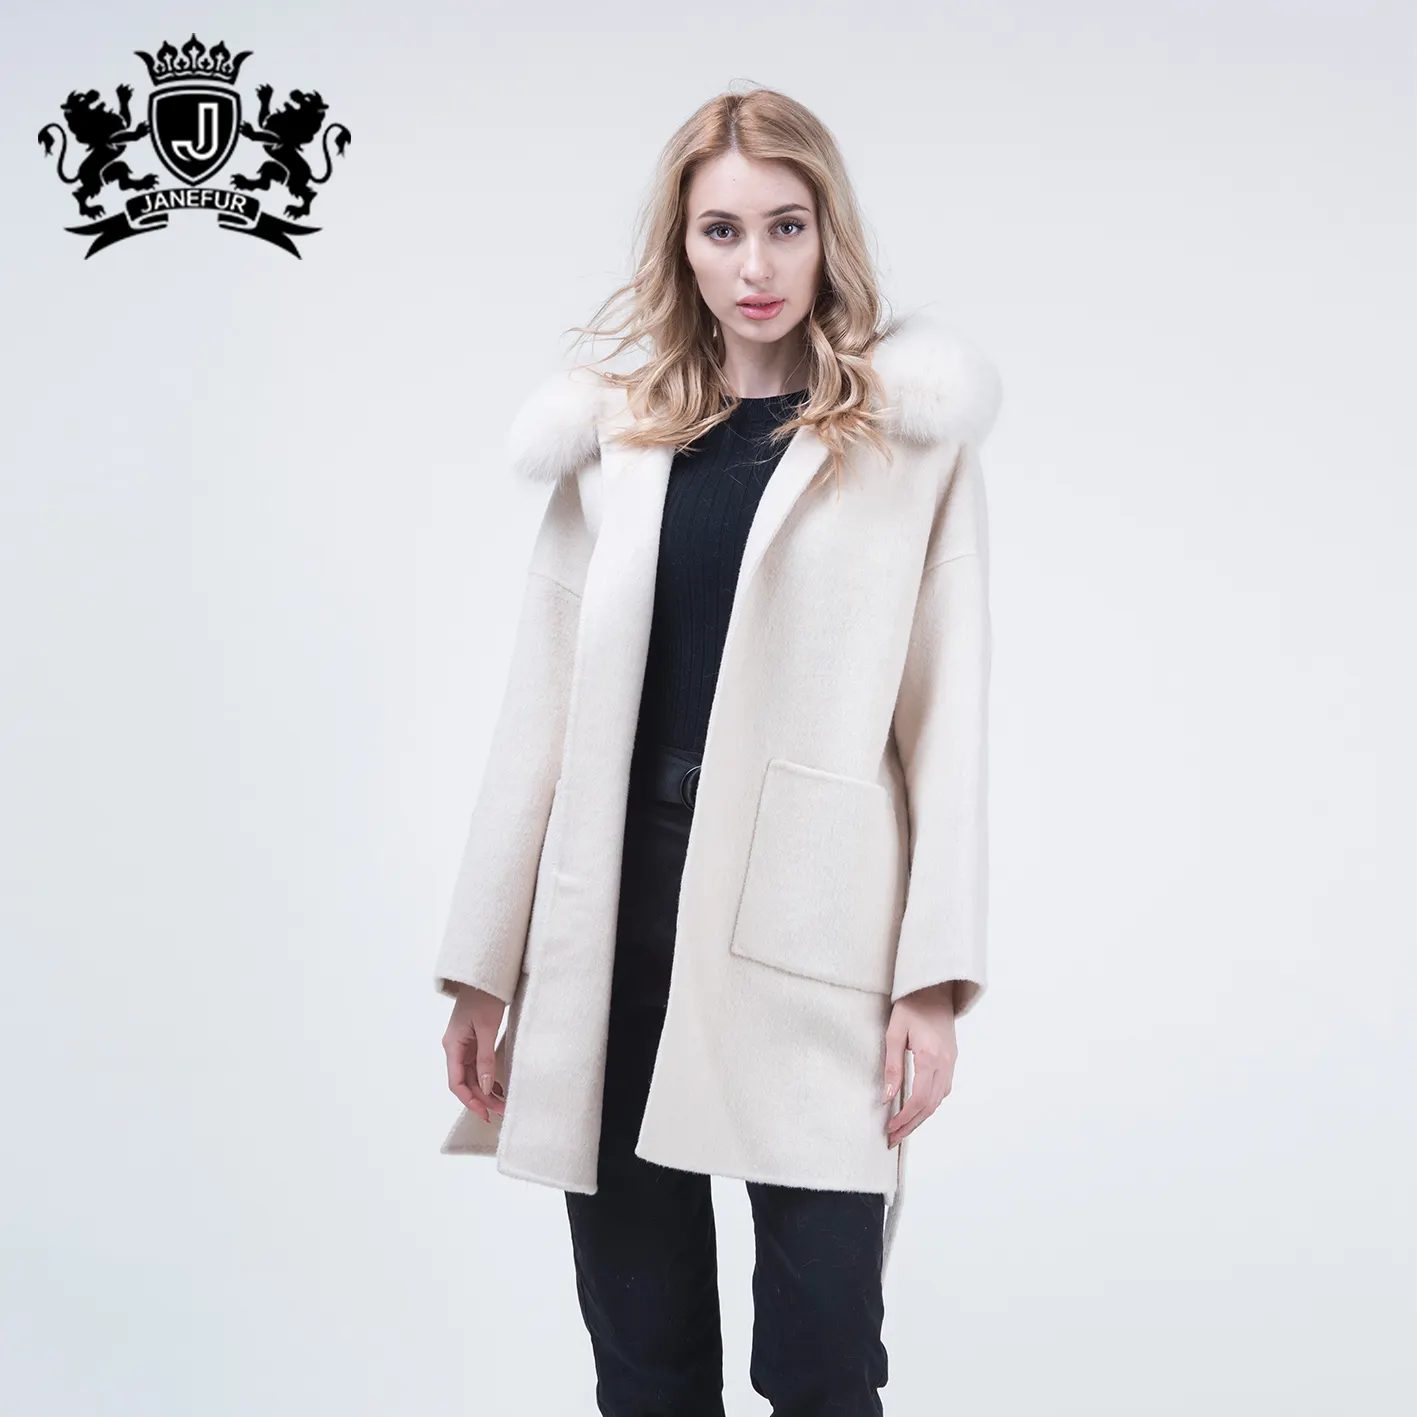 Janefur Bán Buôn Sang Trọng Cashmere Coat Mùa Đông Ấm Áp Đôi Mặt Phụ Nữ Trẻ Len Coat Với Fox Fur